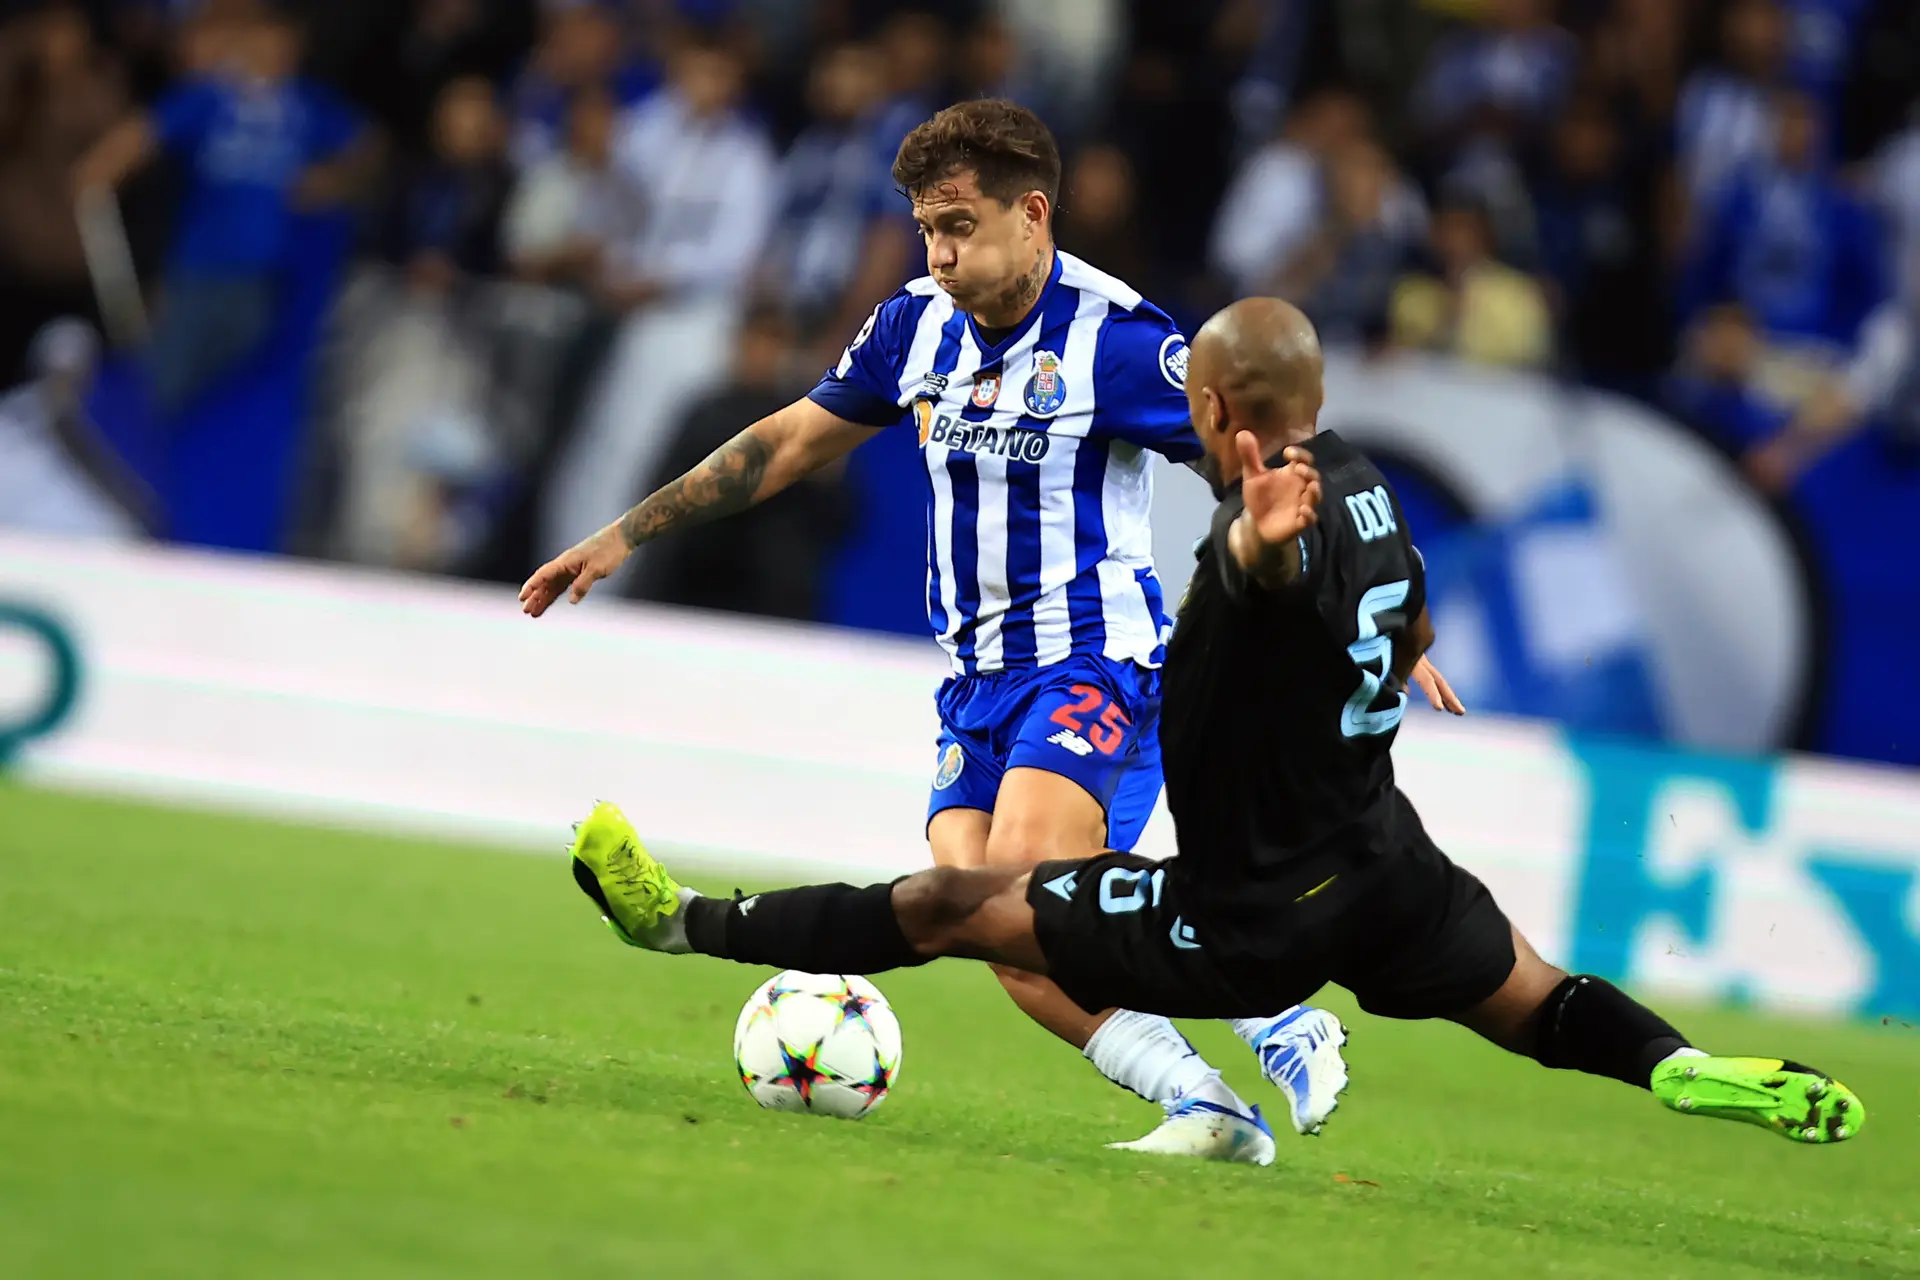 Club Brugge - Porto': A Liga dos Campeões em direto na Eleven